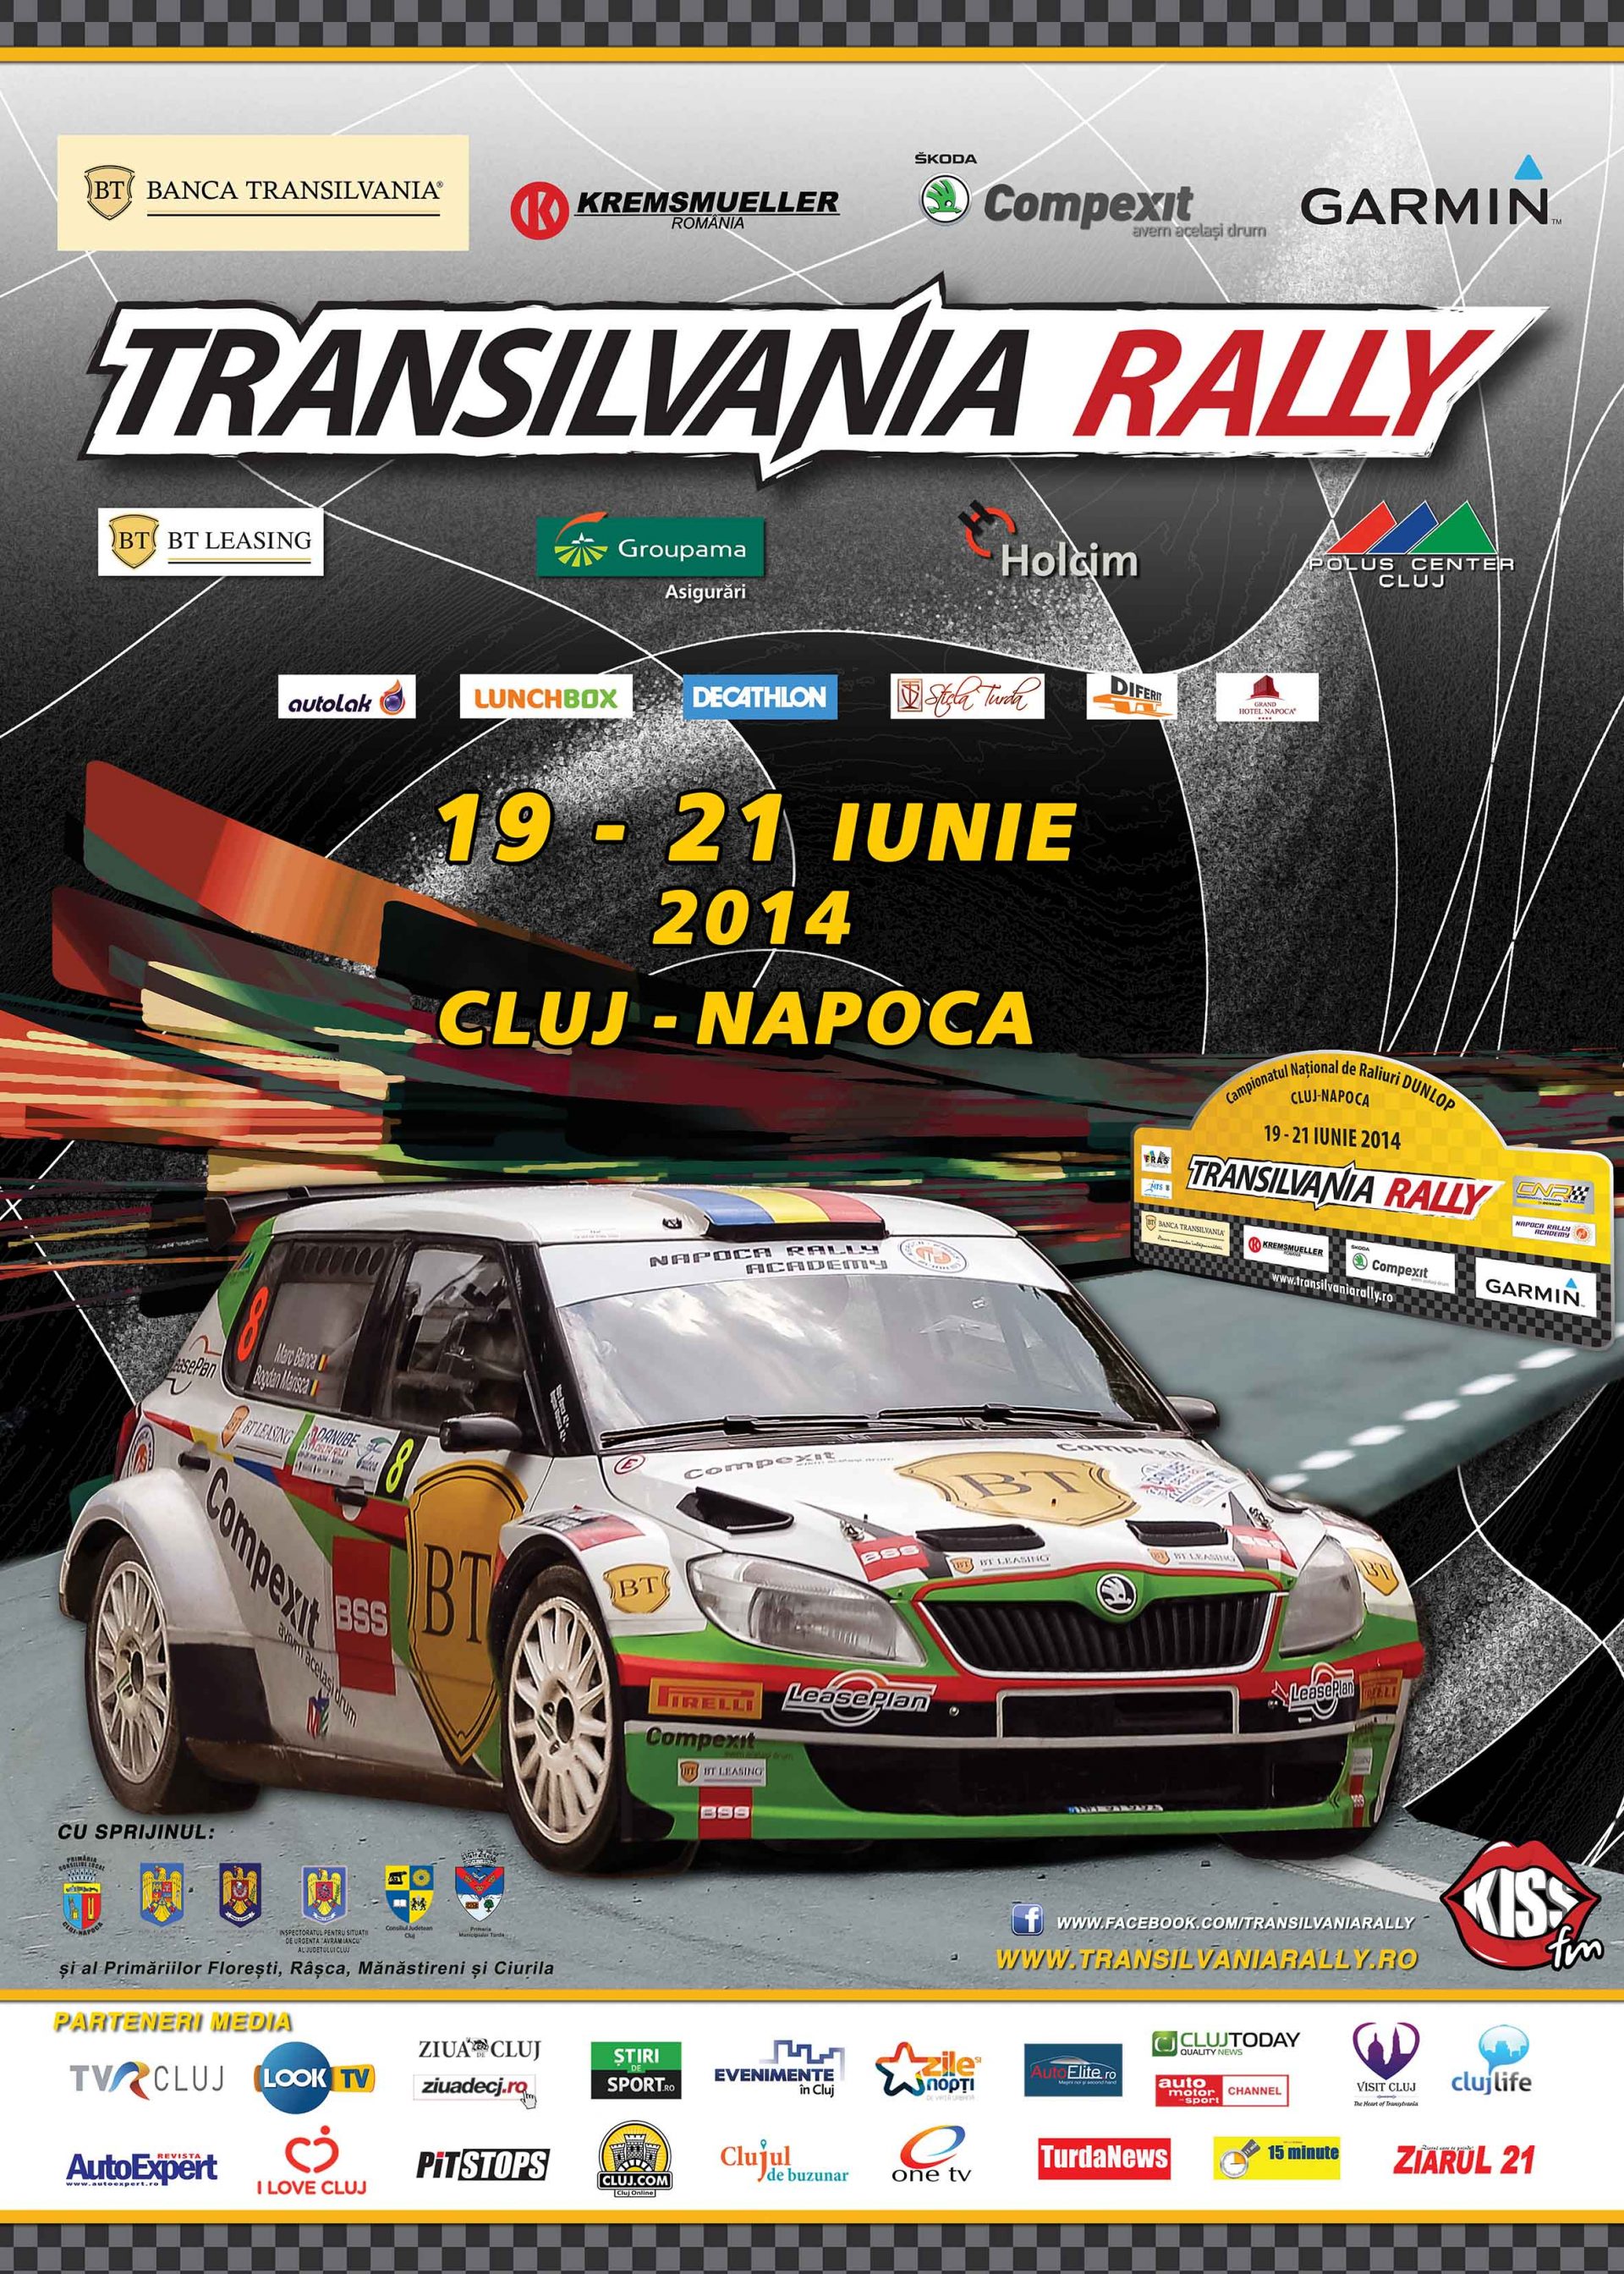 48 de echipaje pe lista de start pentru Transilvania Rally